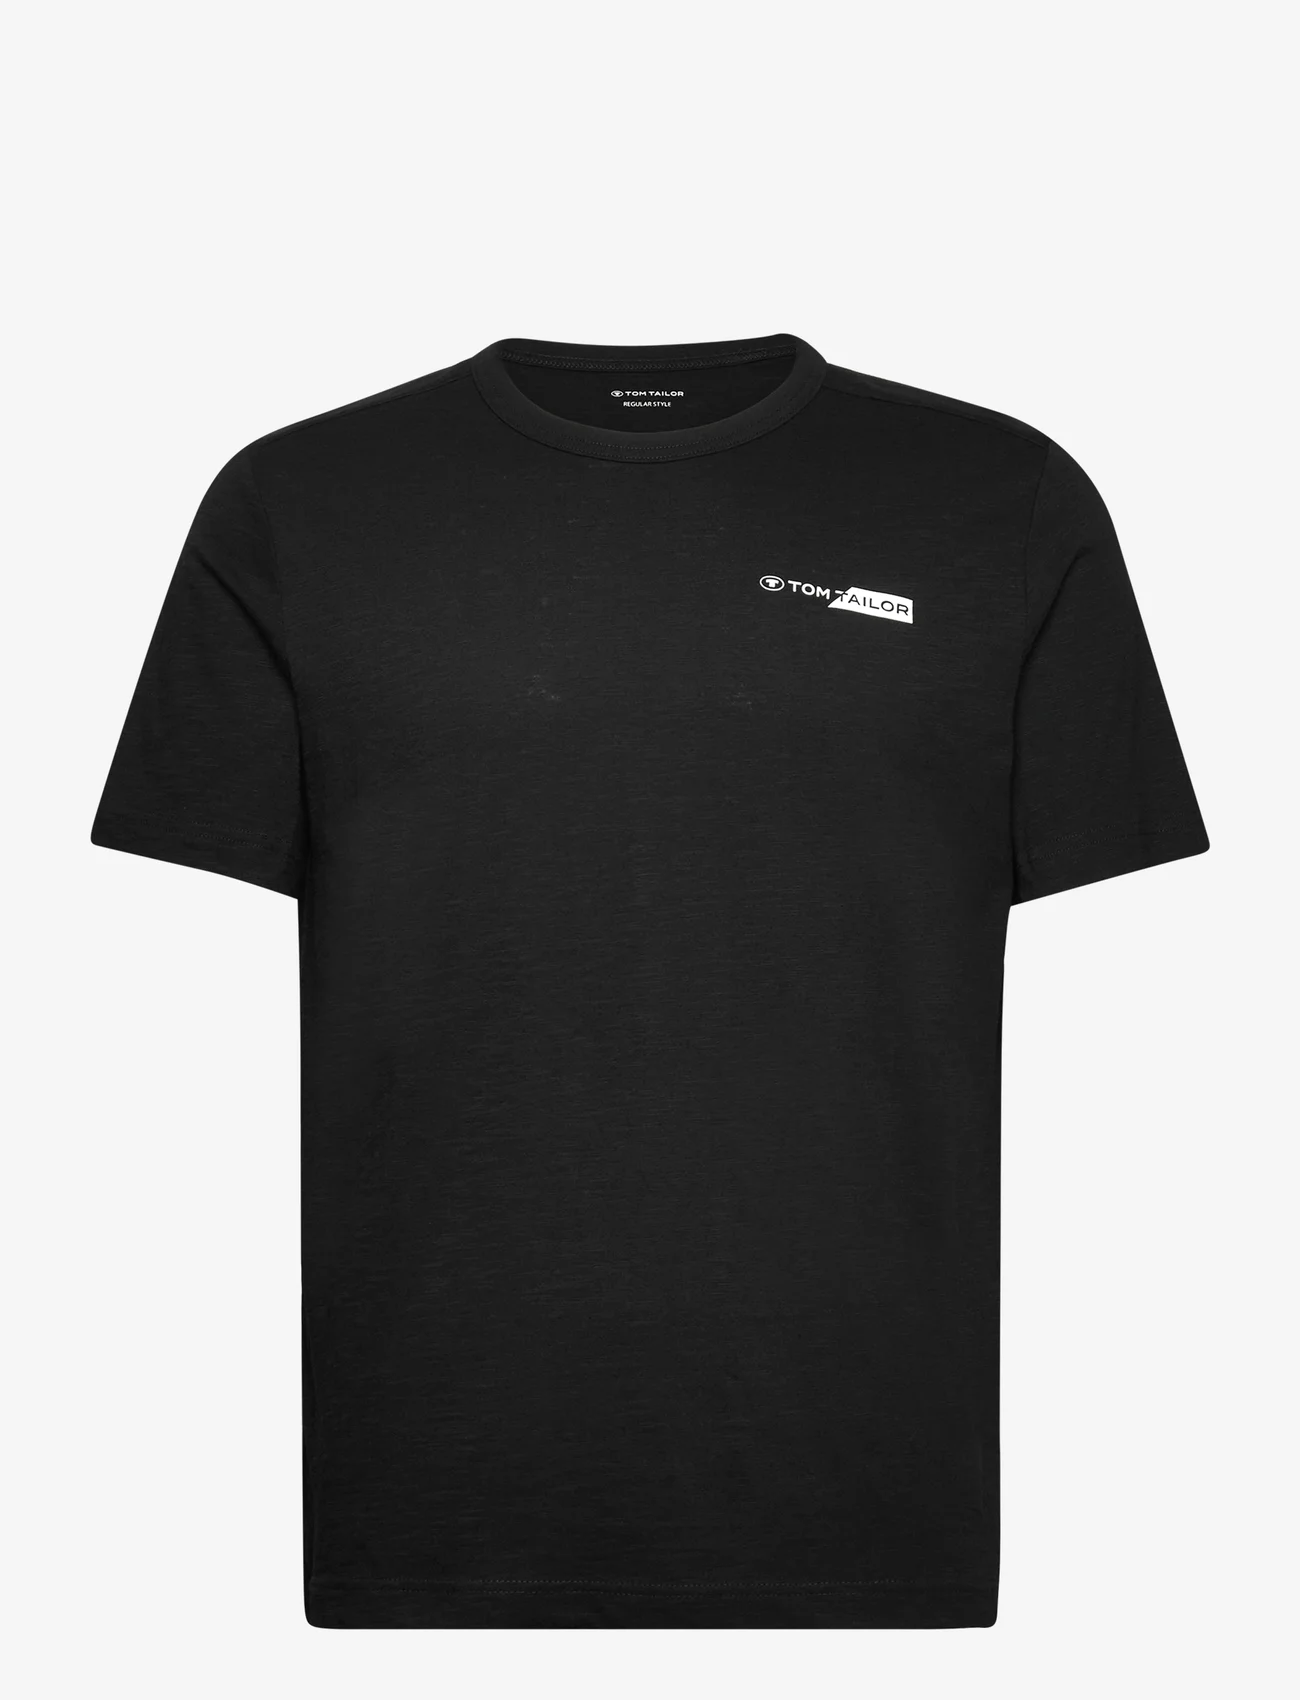 Tom Tailor - printed t-shirt - lägsta priserna - black - 0